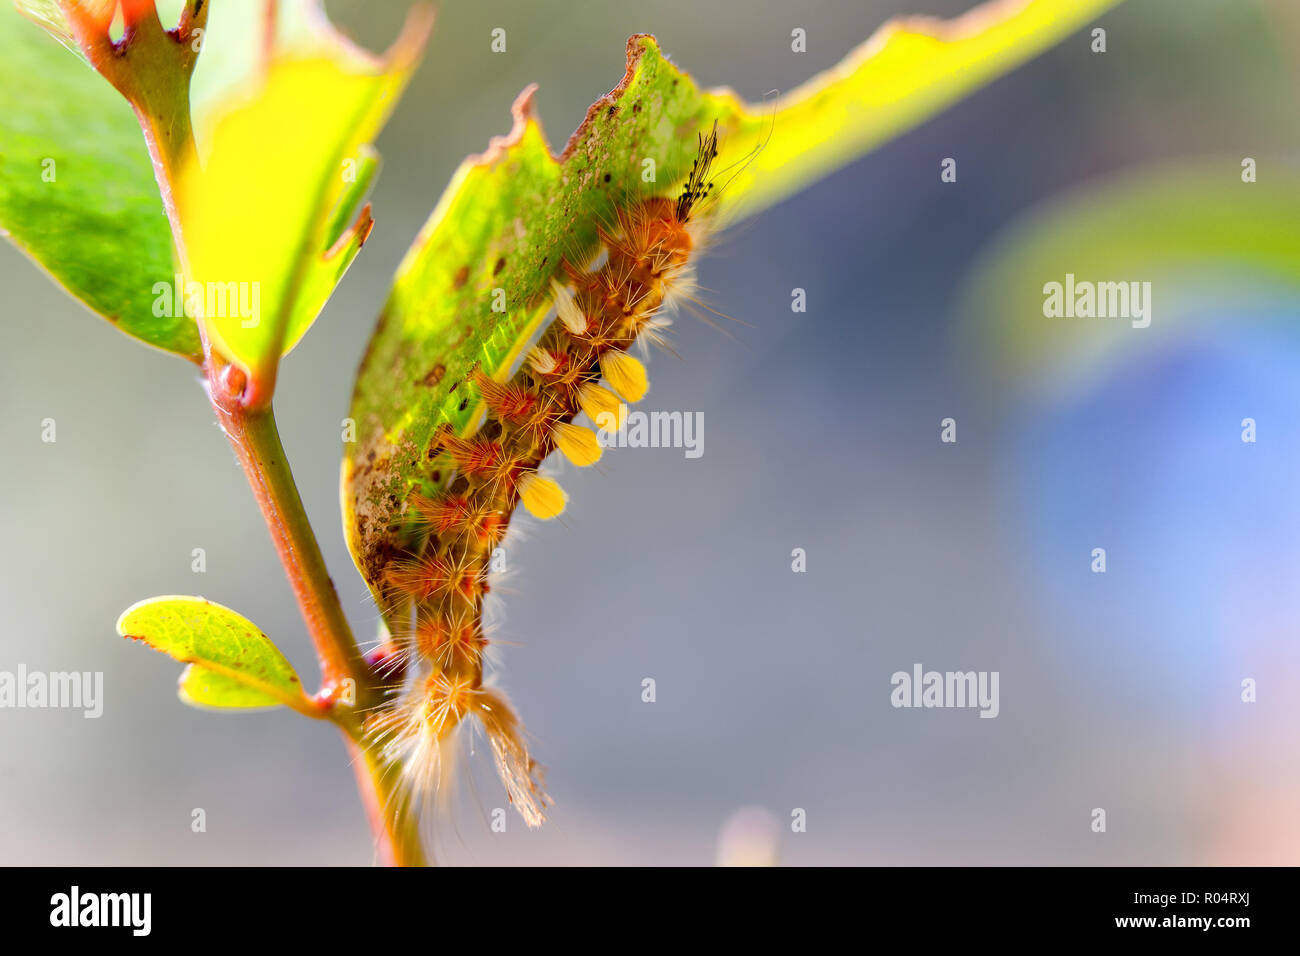 Orgyia espèce caterpillar debout sur un bush Banque D'Images